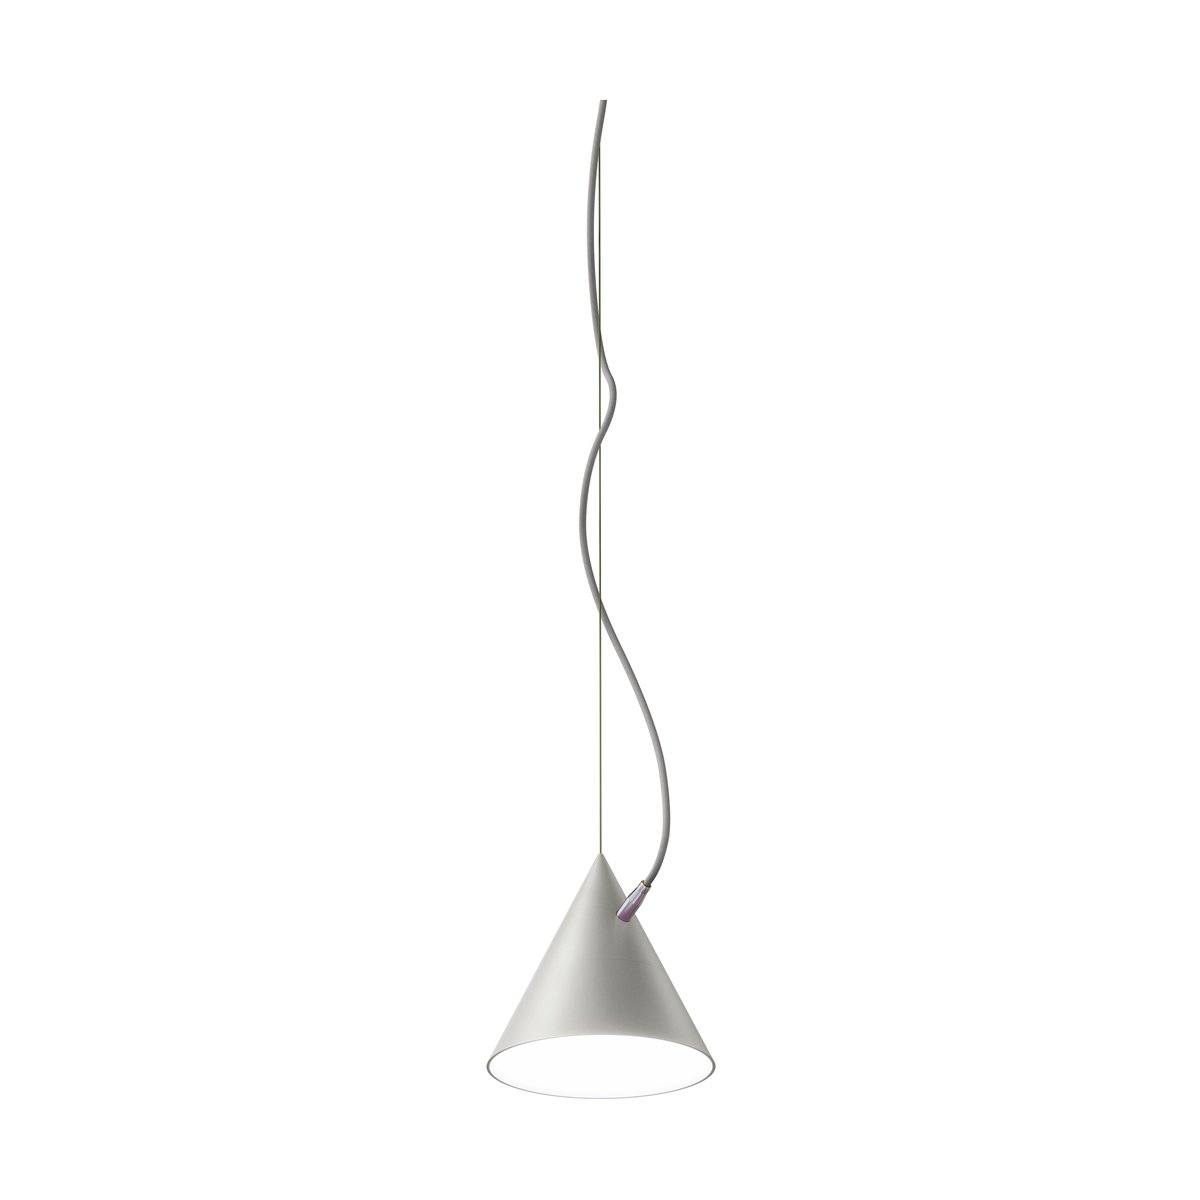 Noon Castor hanglamp 20 cm Grijs-lichtgrijs-zilver